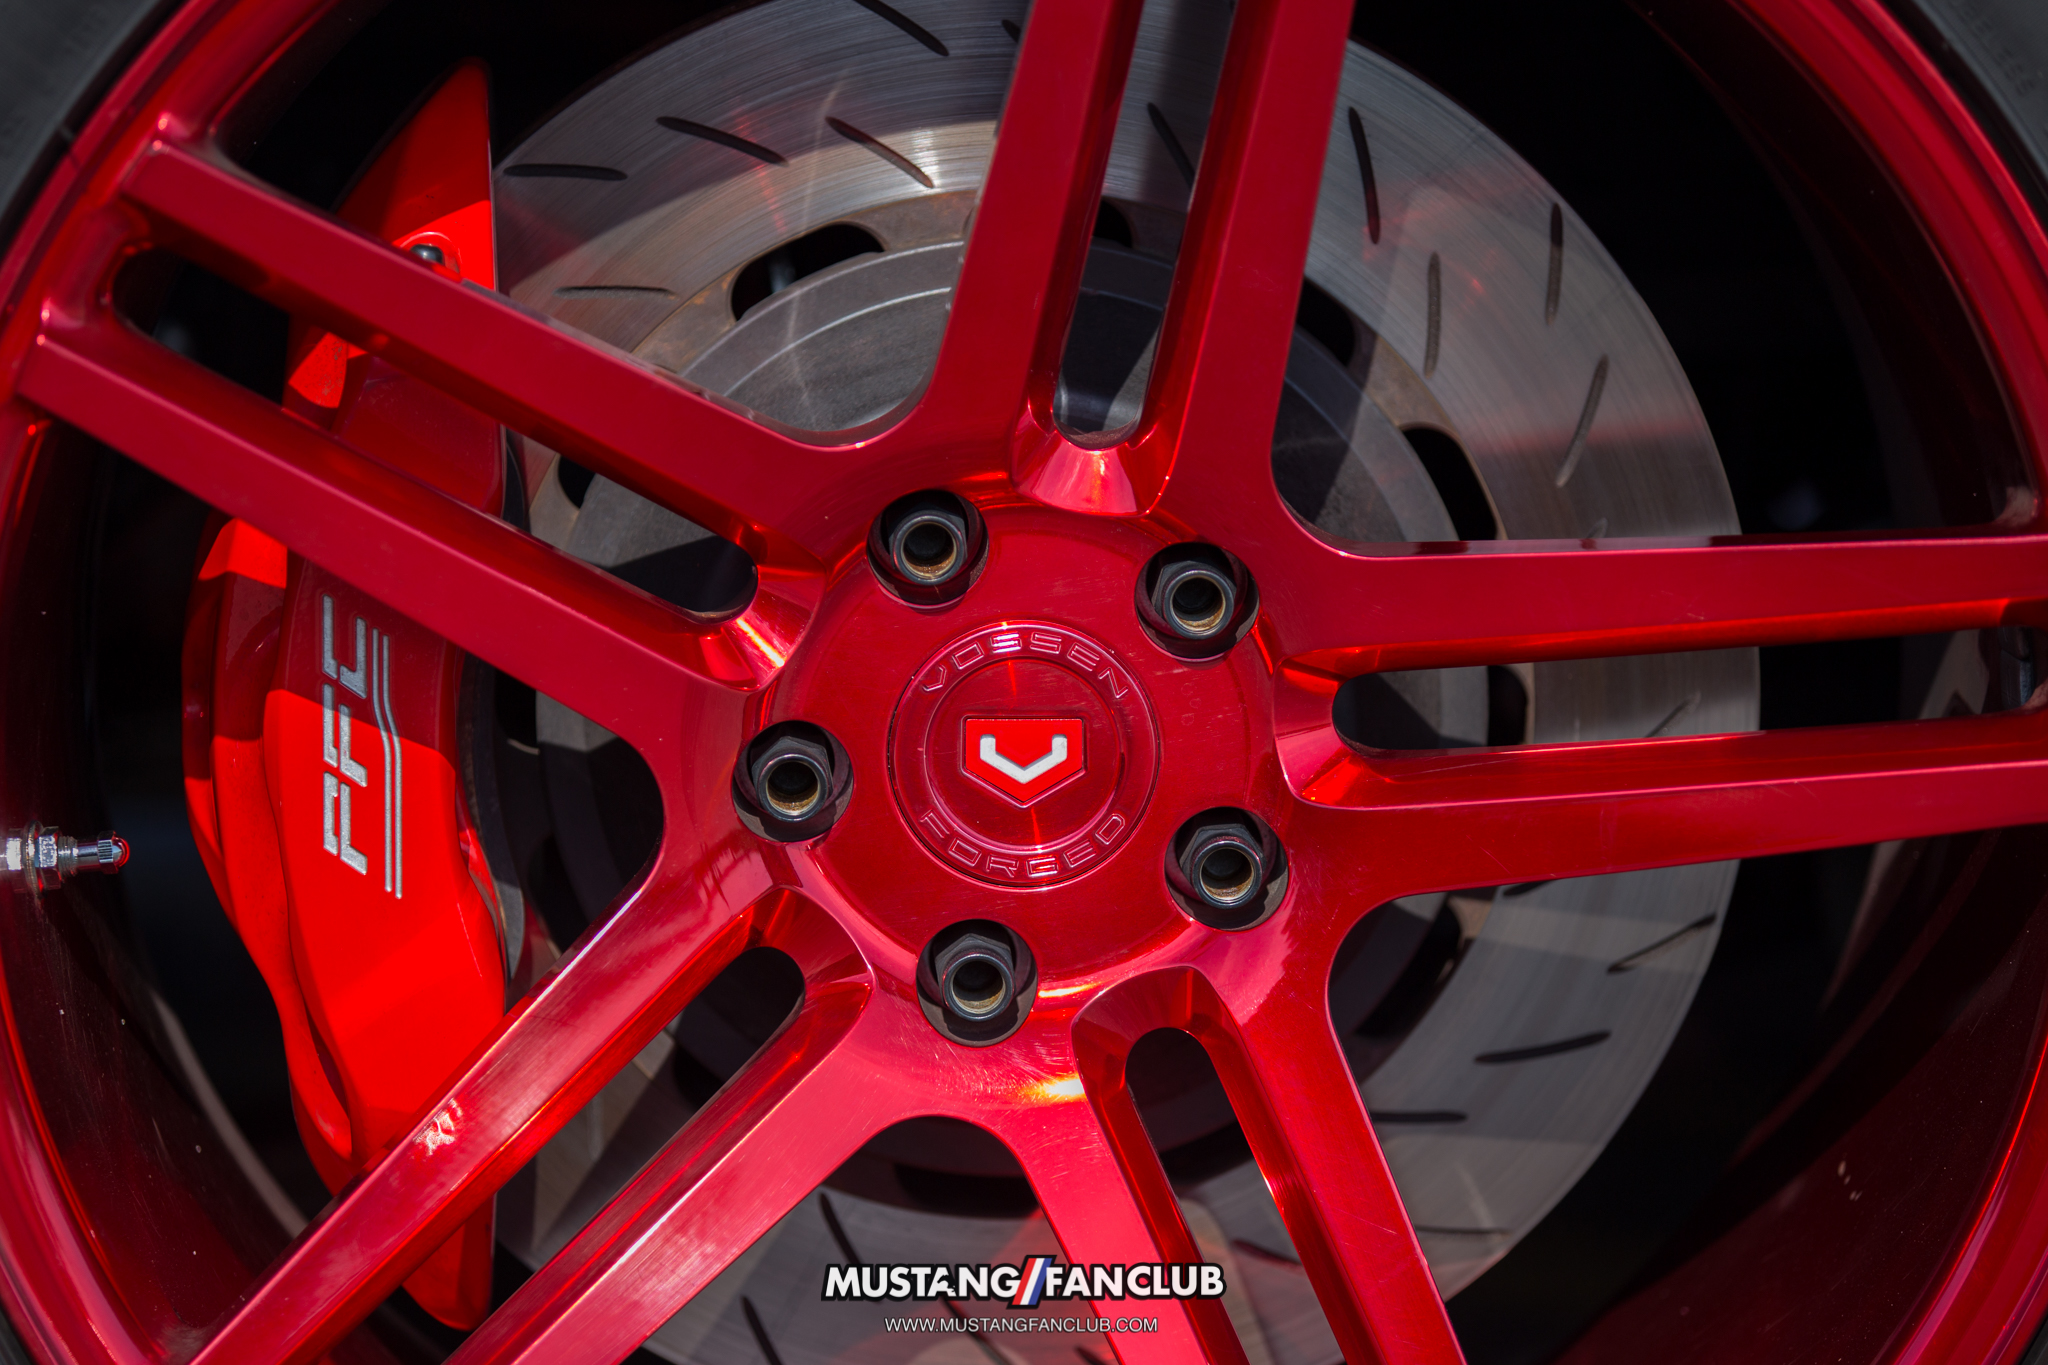 ROUSH performance trakpak vossen wheels #teamvossen mustang fan club mustangfanclub